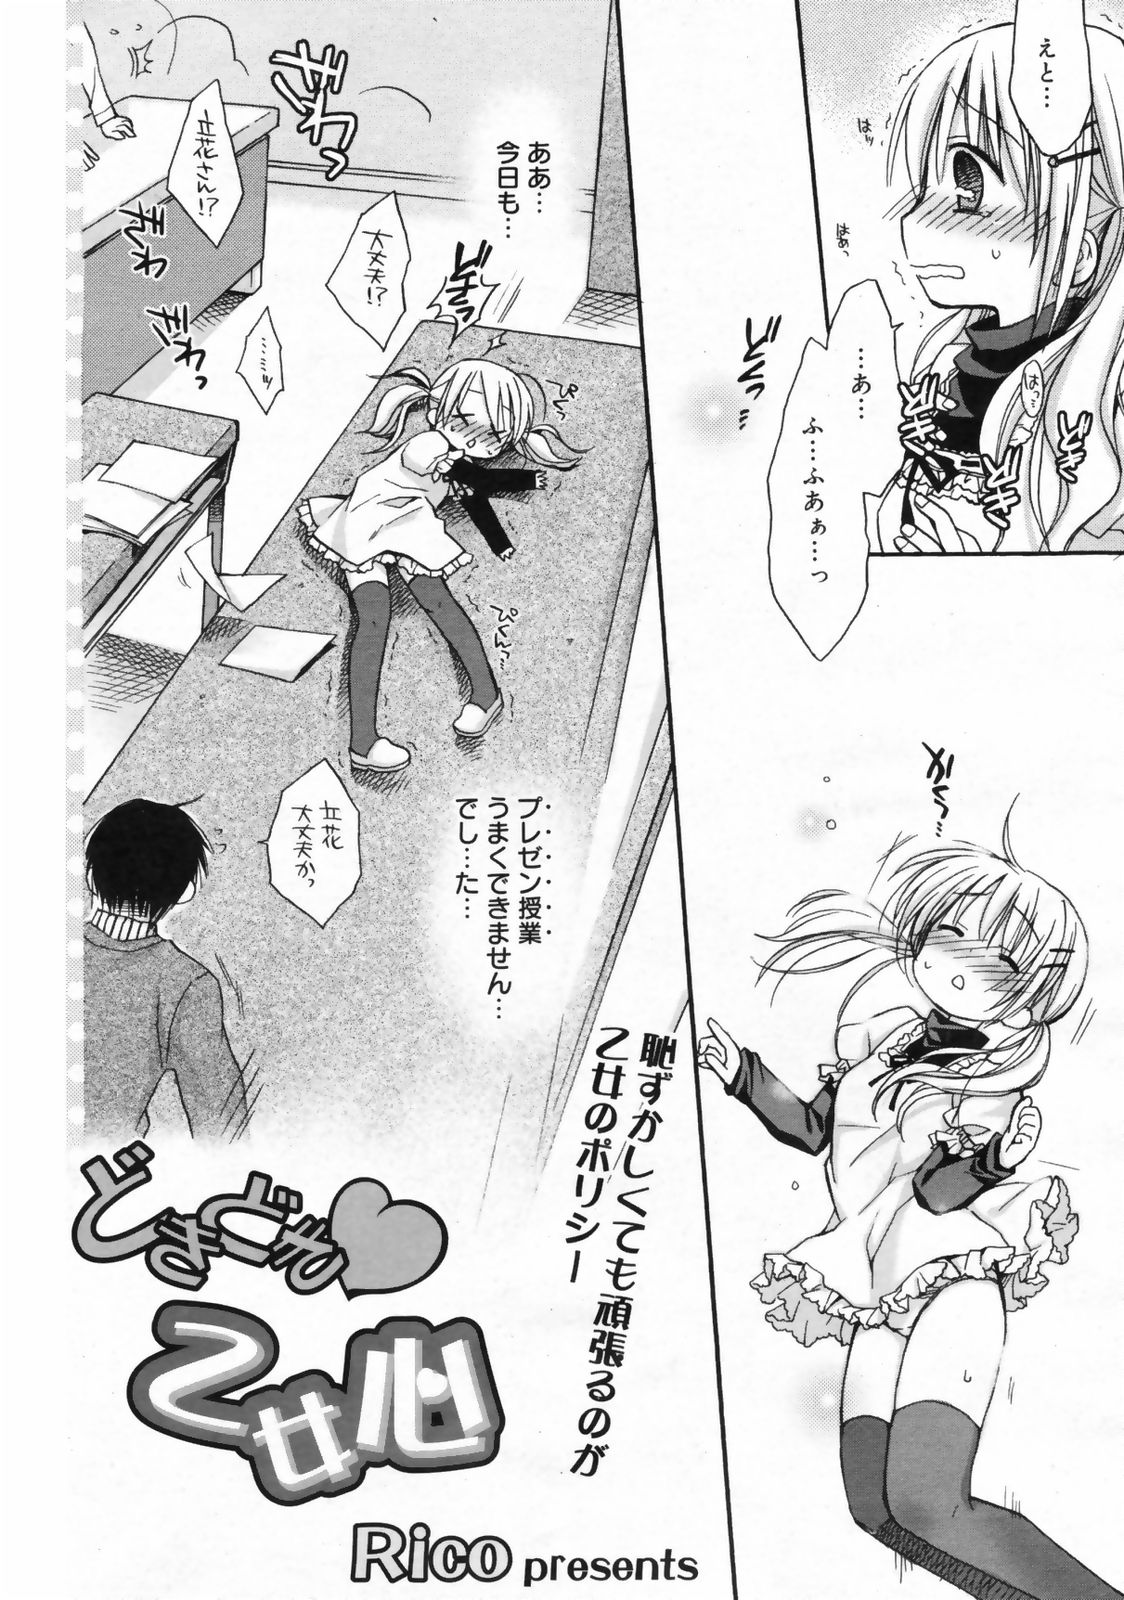 Manga Bangaichi 2009-02 Vol. 234 page 22 full